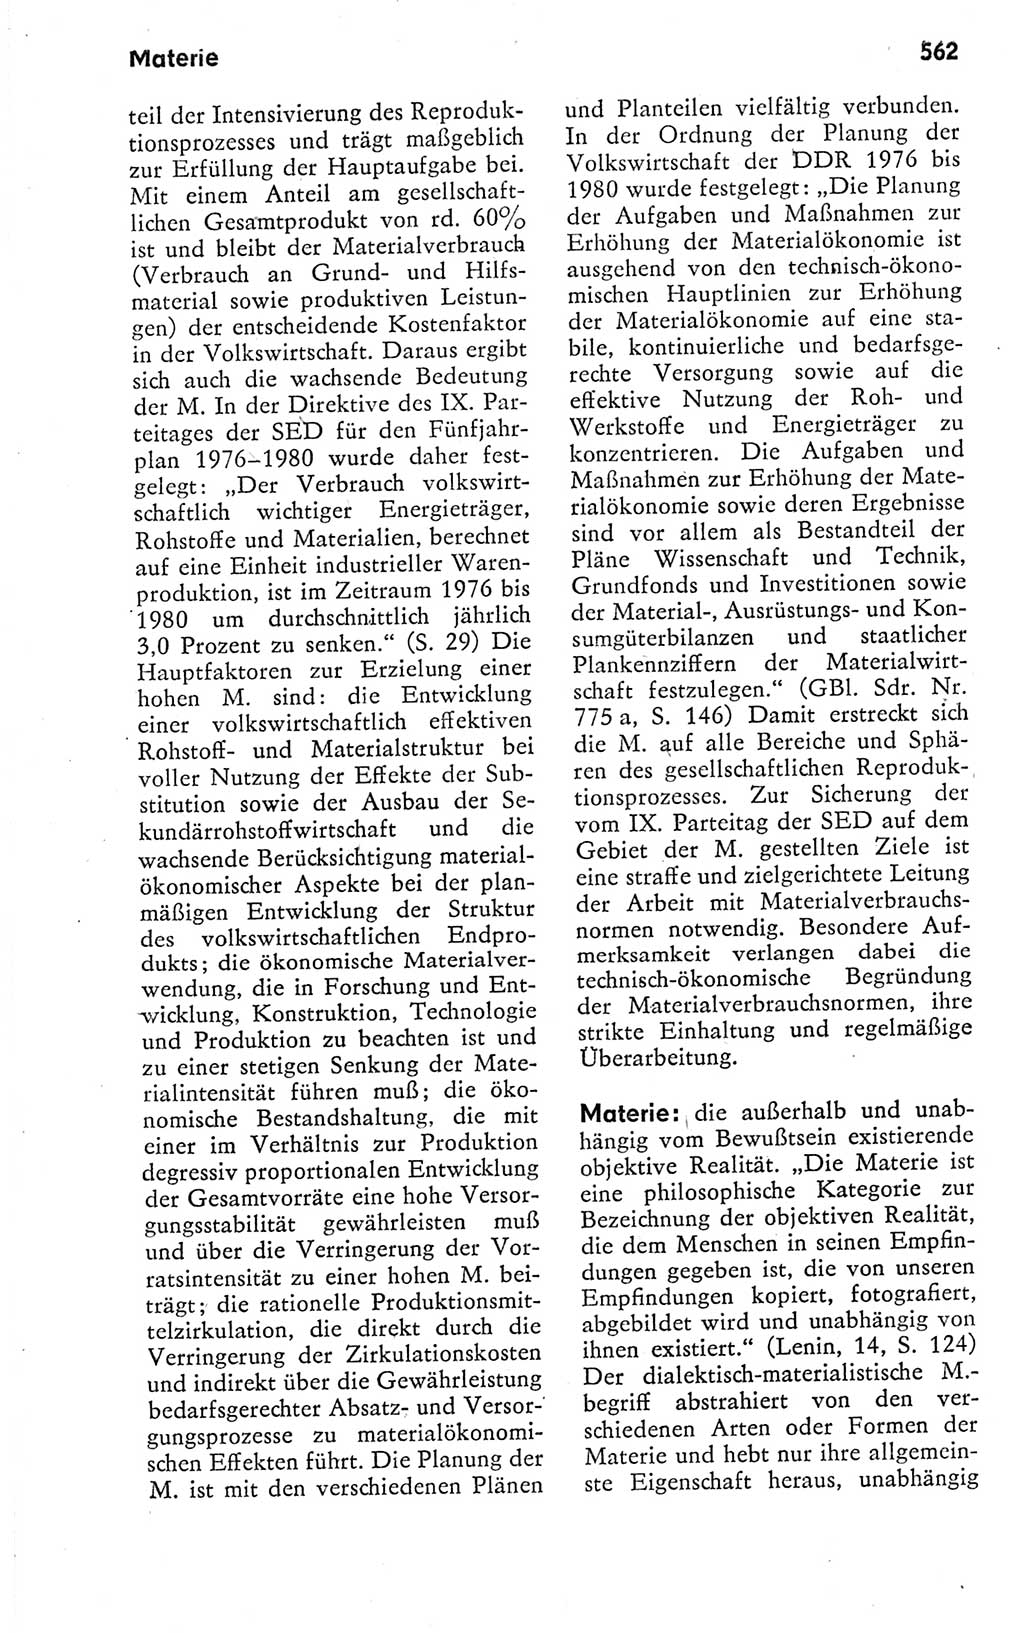 Kleines politisches Wörterbuch [Deutsche Demokratische Republik (DDR)] 1978, Seite 562 (Kl. pol. Wb. DDR 1978, S. 562)